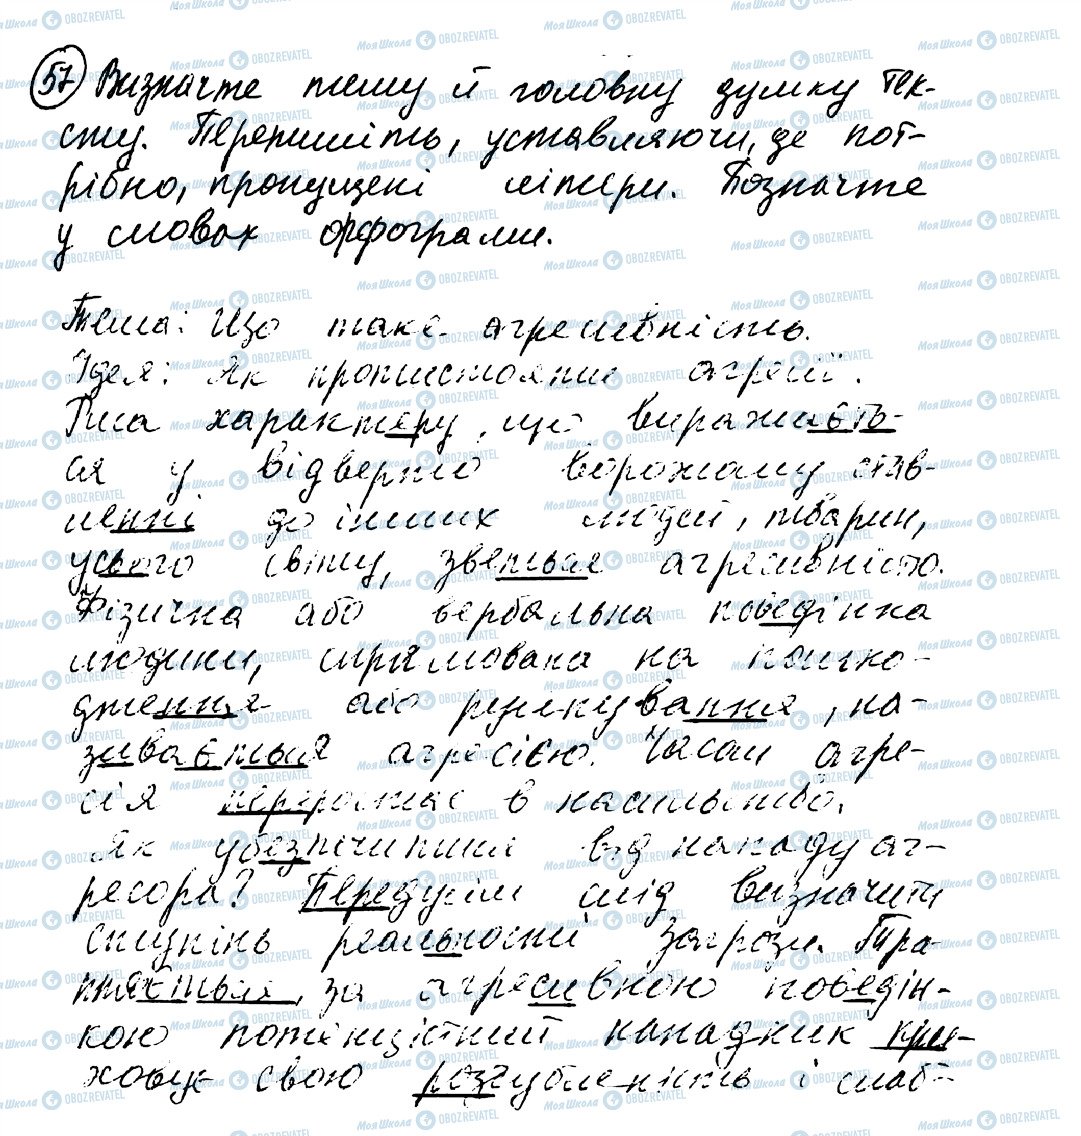 ГДЗ Українська мова 8 клас сторінка 57